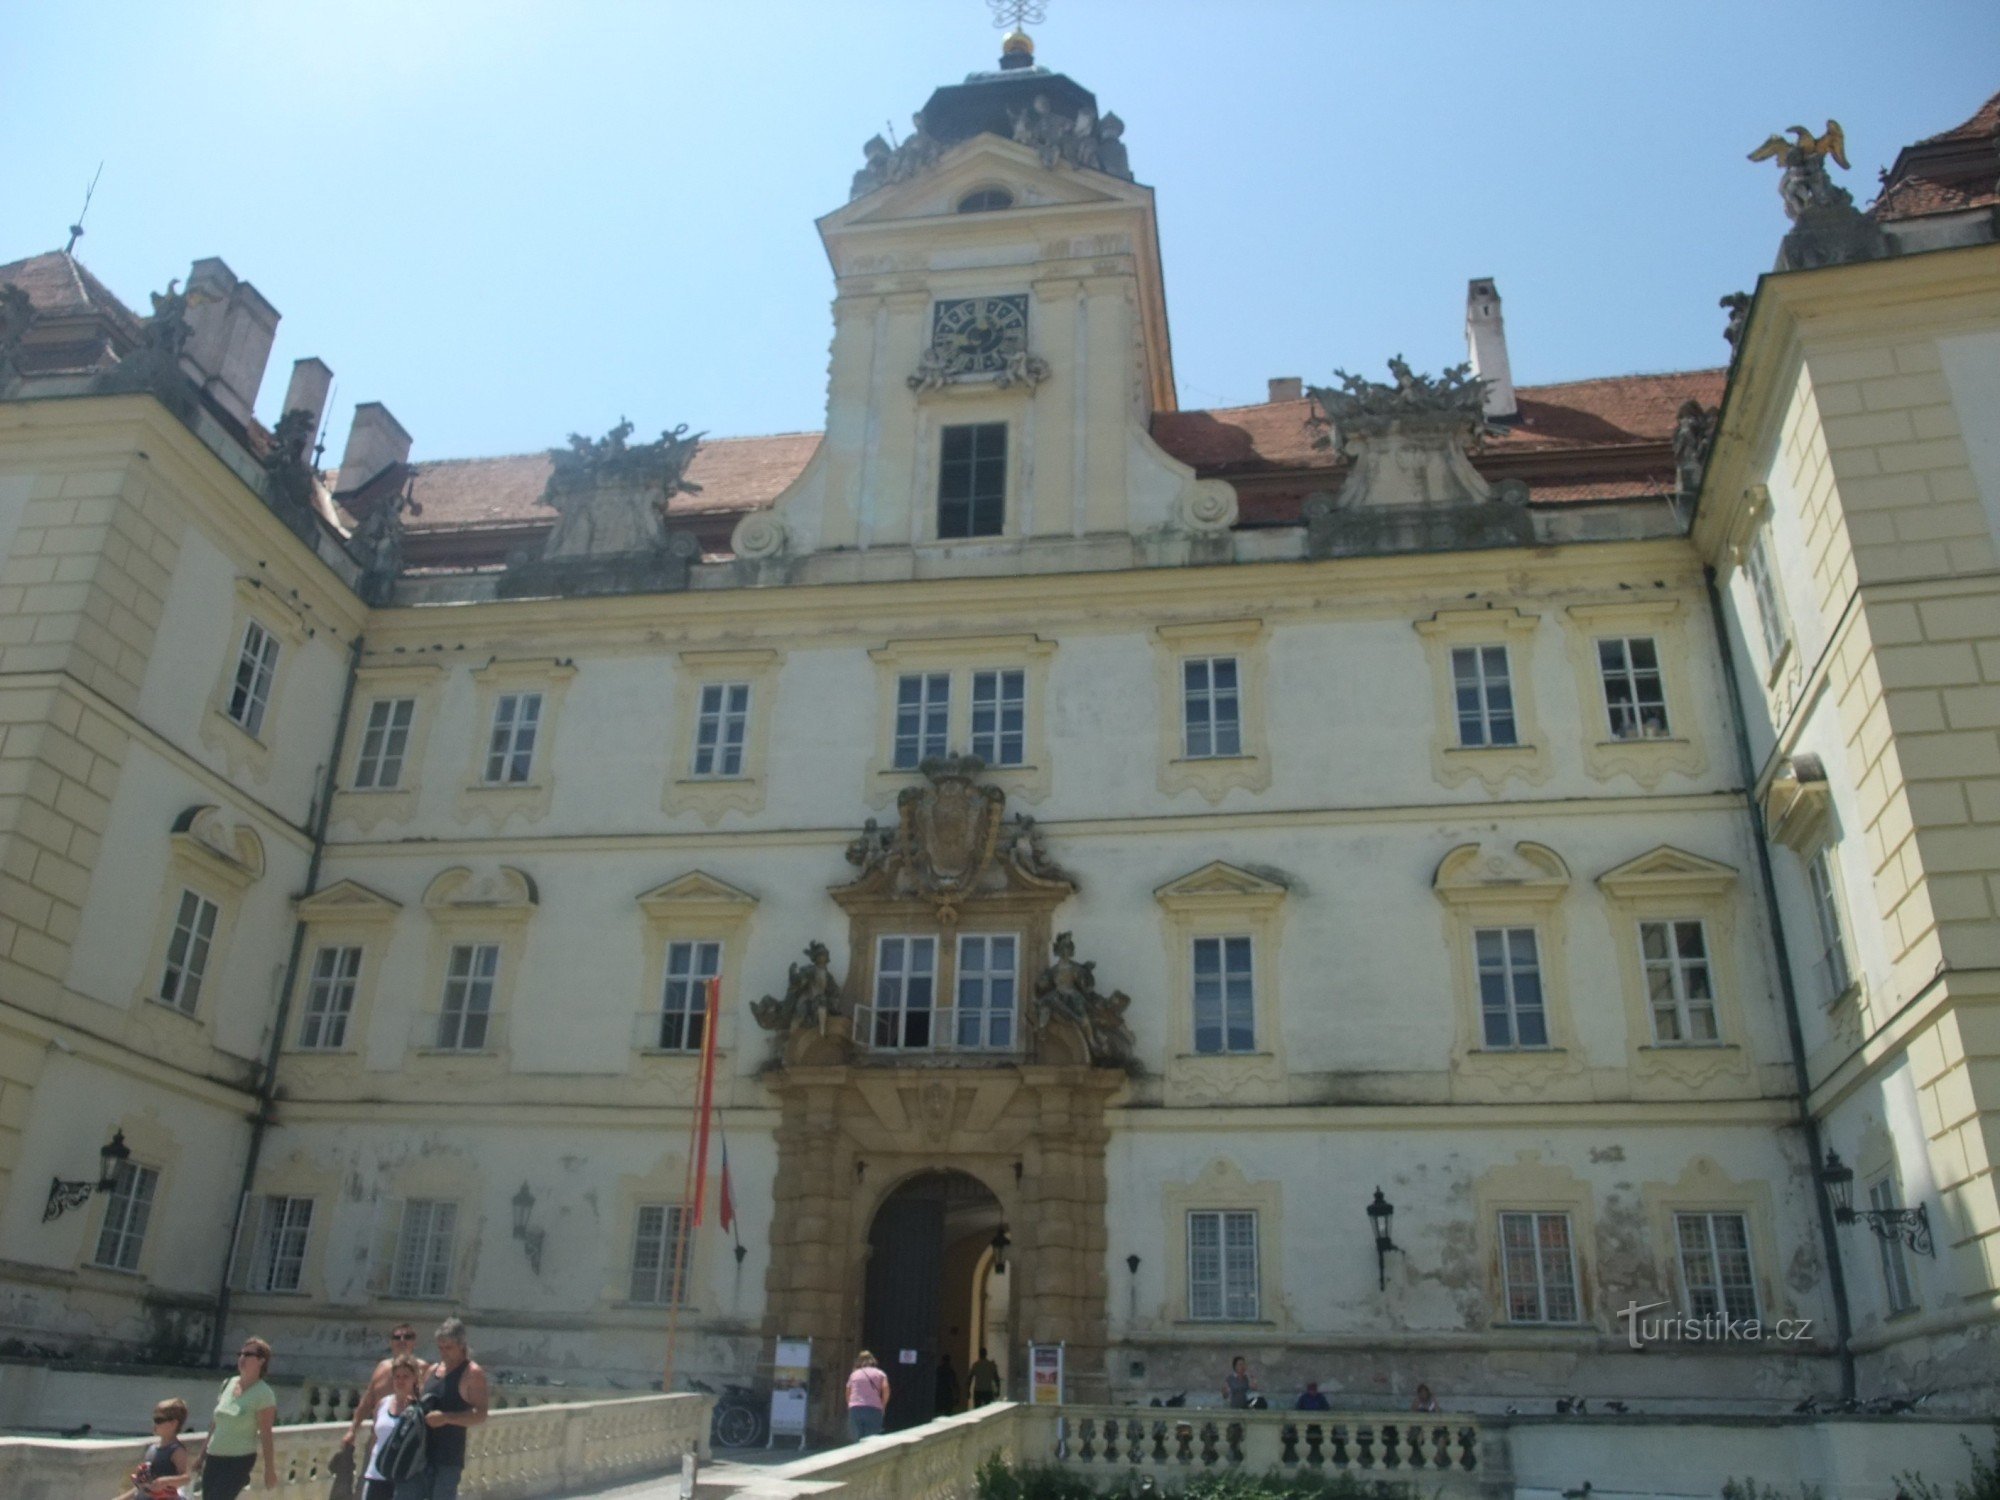 Κάστρο Valtice - η πρώην αρχοντική κατοικία της οικογένειας του Λιχτενστάιν